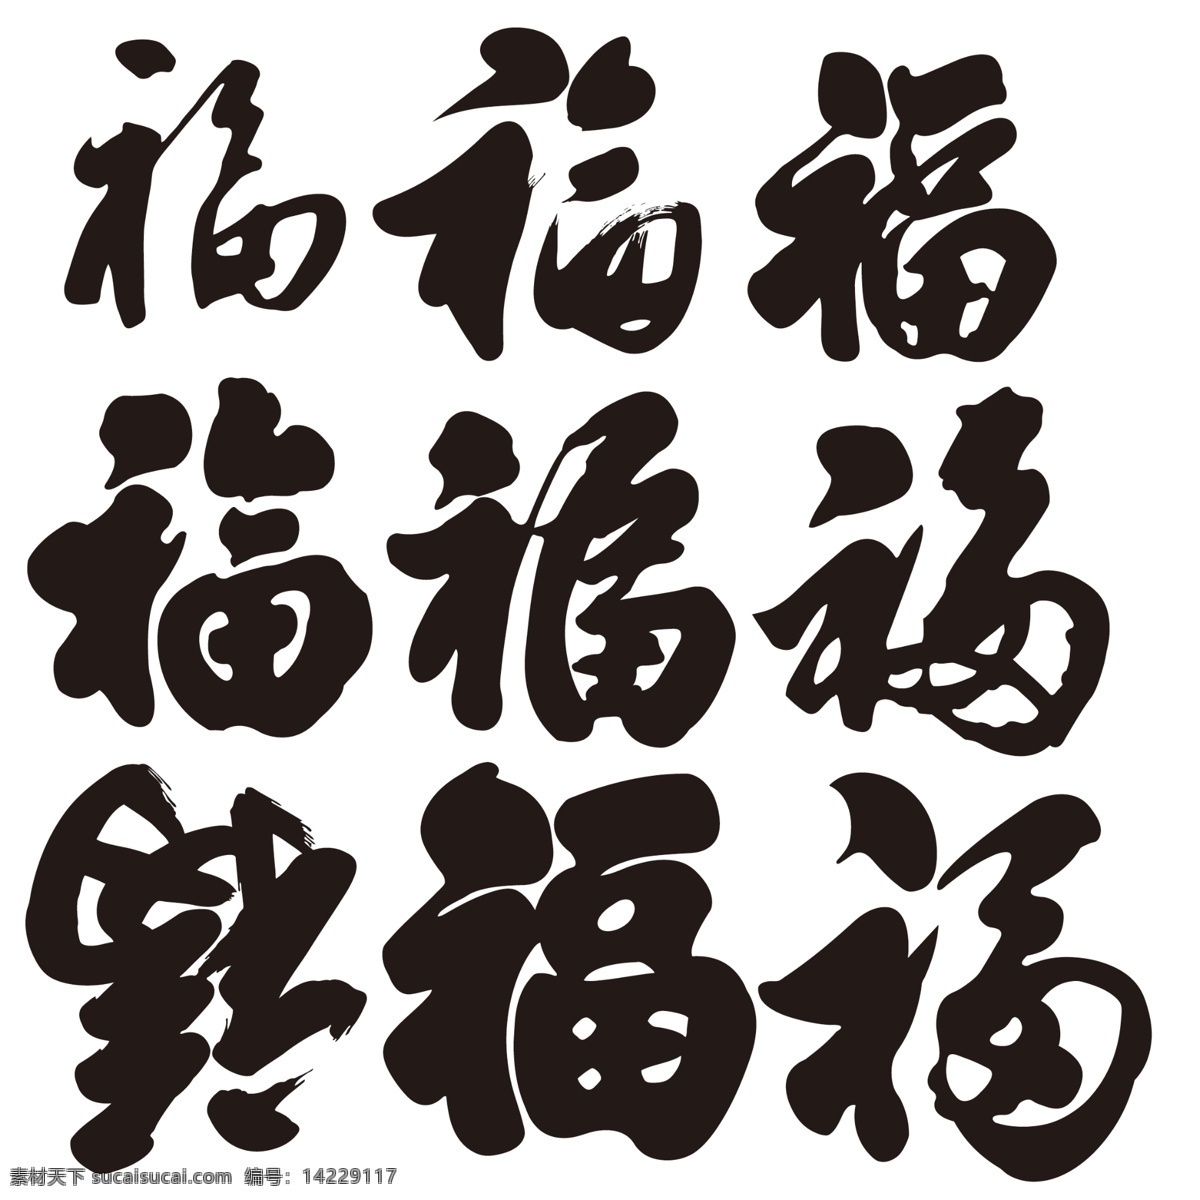 福字 福字字体 字体设计 字体库 各种福字 分层 源文件